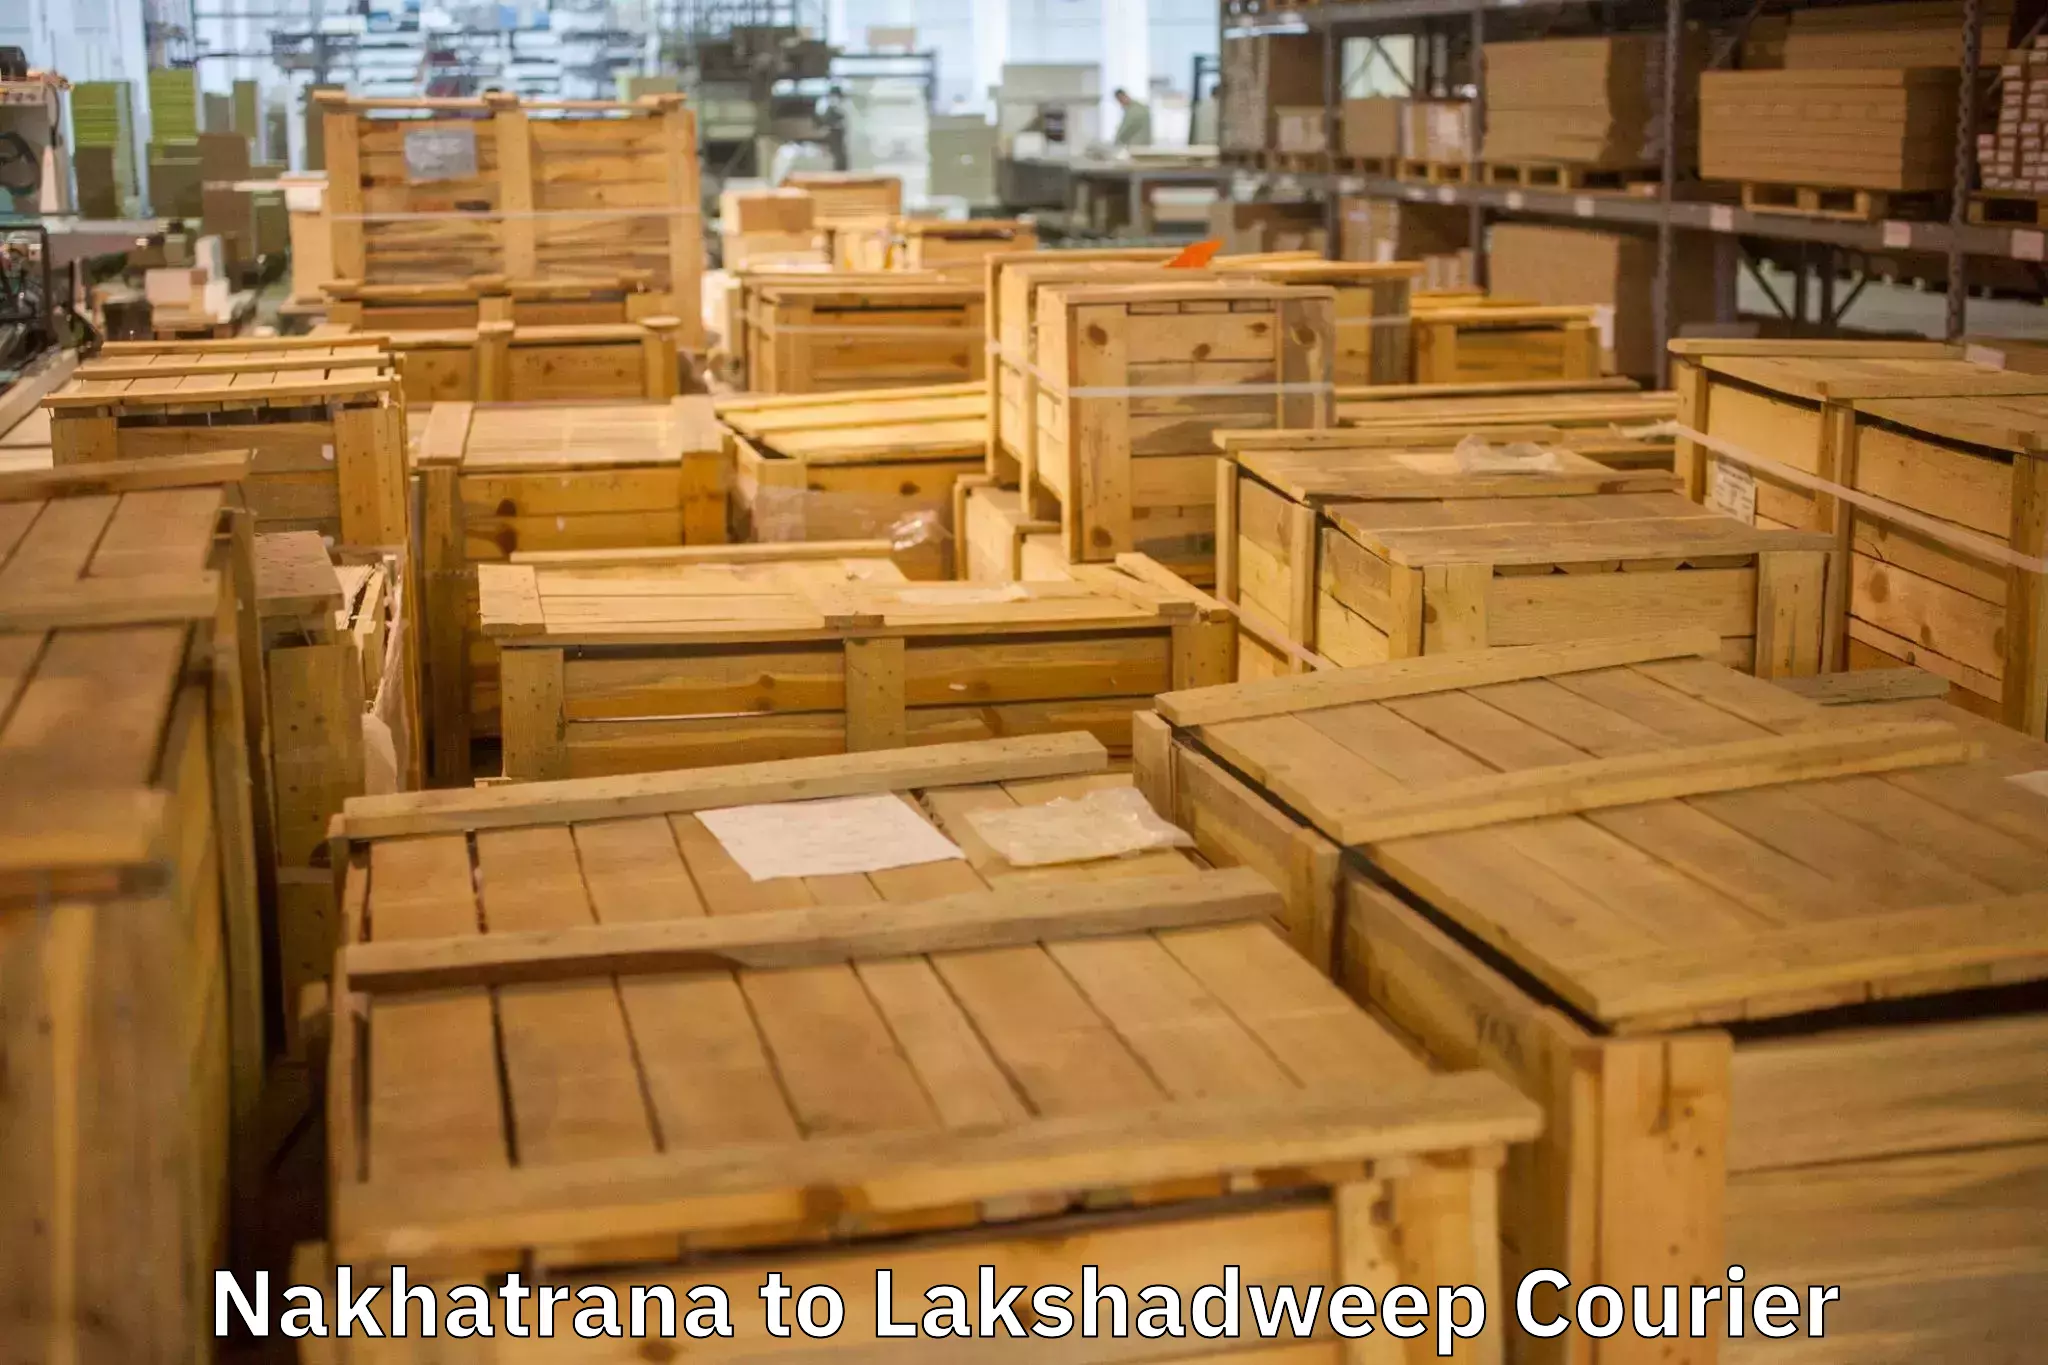 Efficient packing and moving Nakhatrana to Lakshadweep